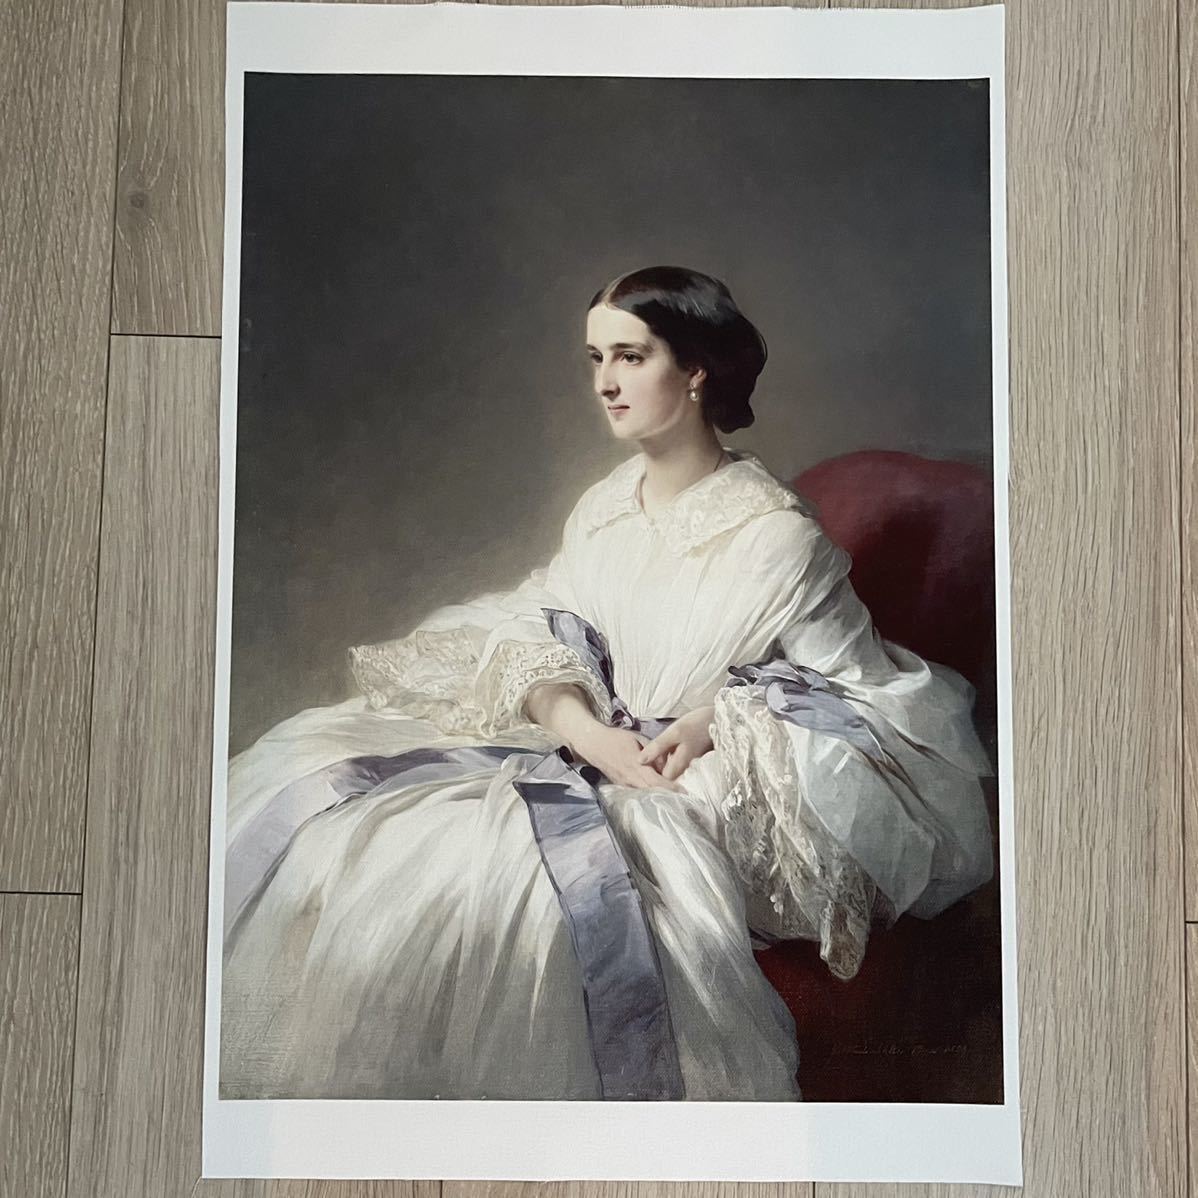 [Envío gratis] Impresión en lienzo de la condesa Olga de Winterhalter 307x413 Franz Winterhalter pintura occidental retrato de pintura rusa, obra de arte, cuadro, otros